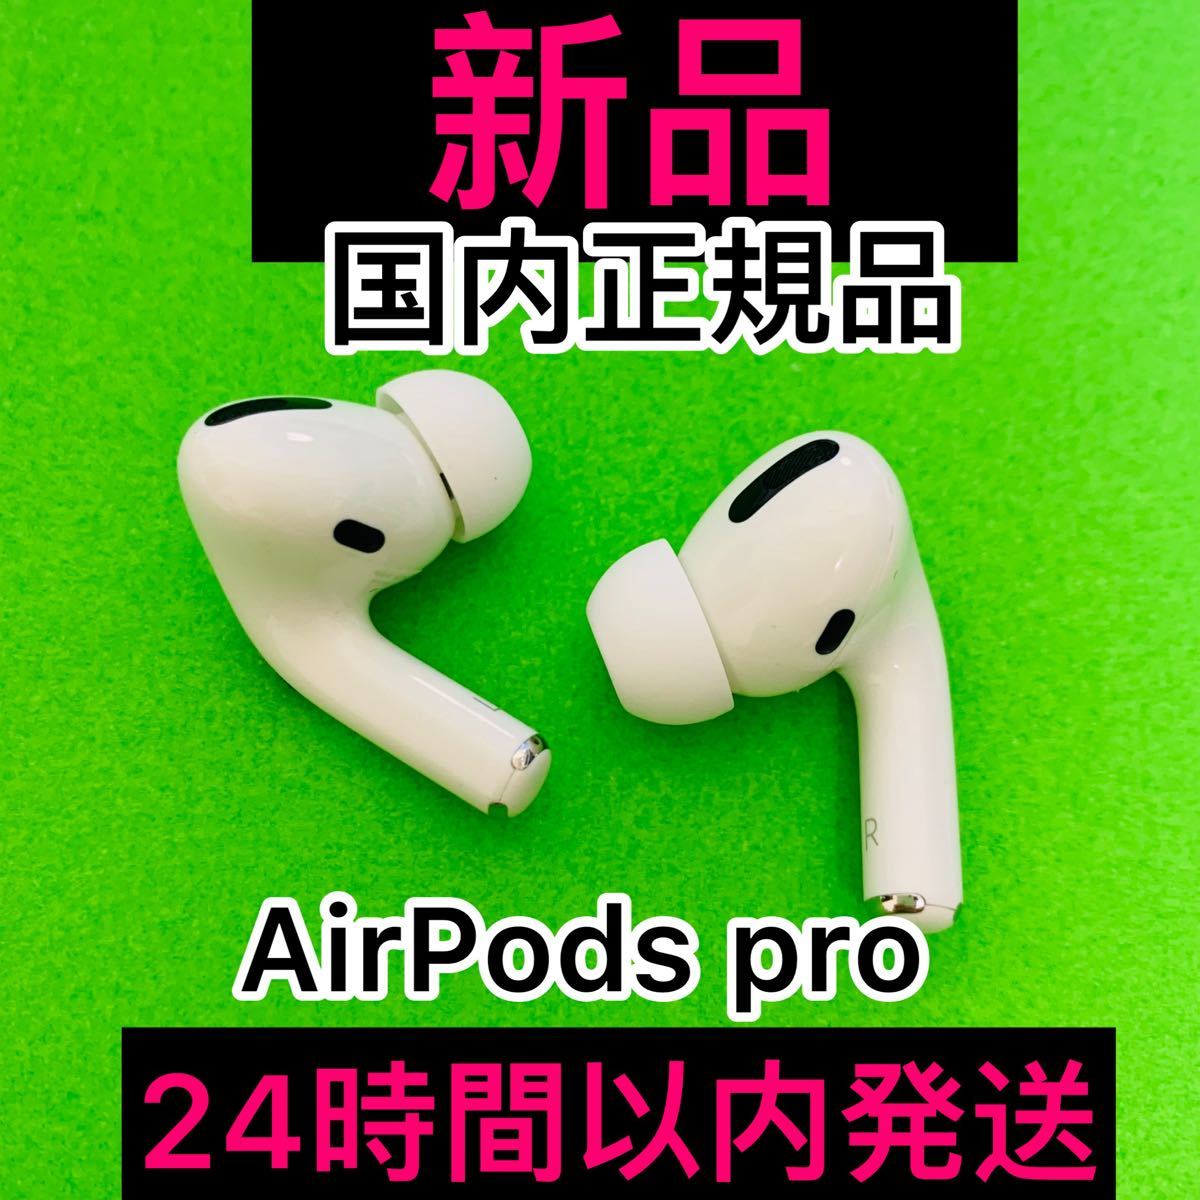 ひし型 【発送24H】 AirPods Pro イヤホン 両耳 のみ【国内正規品 